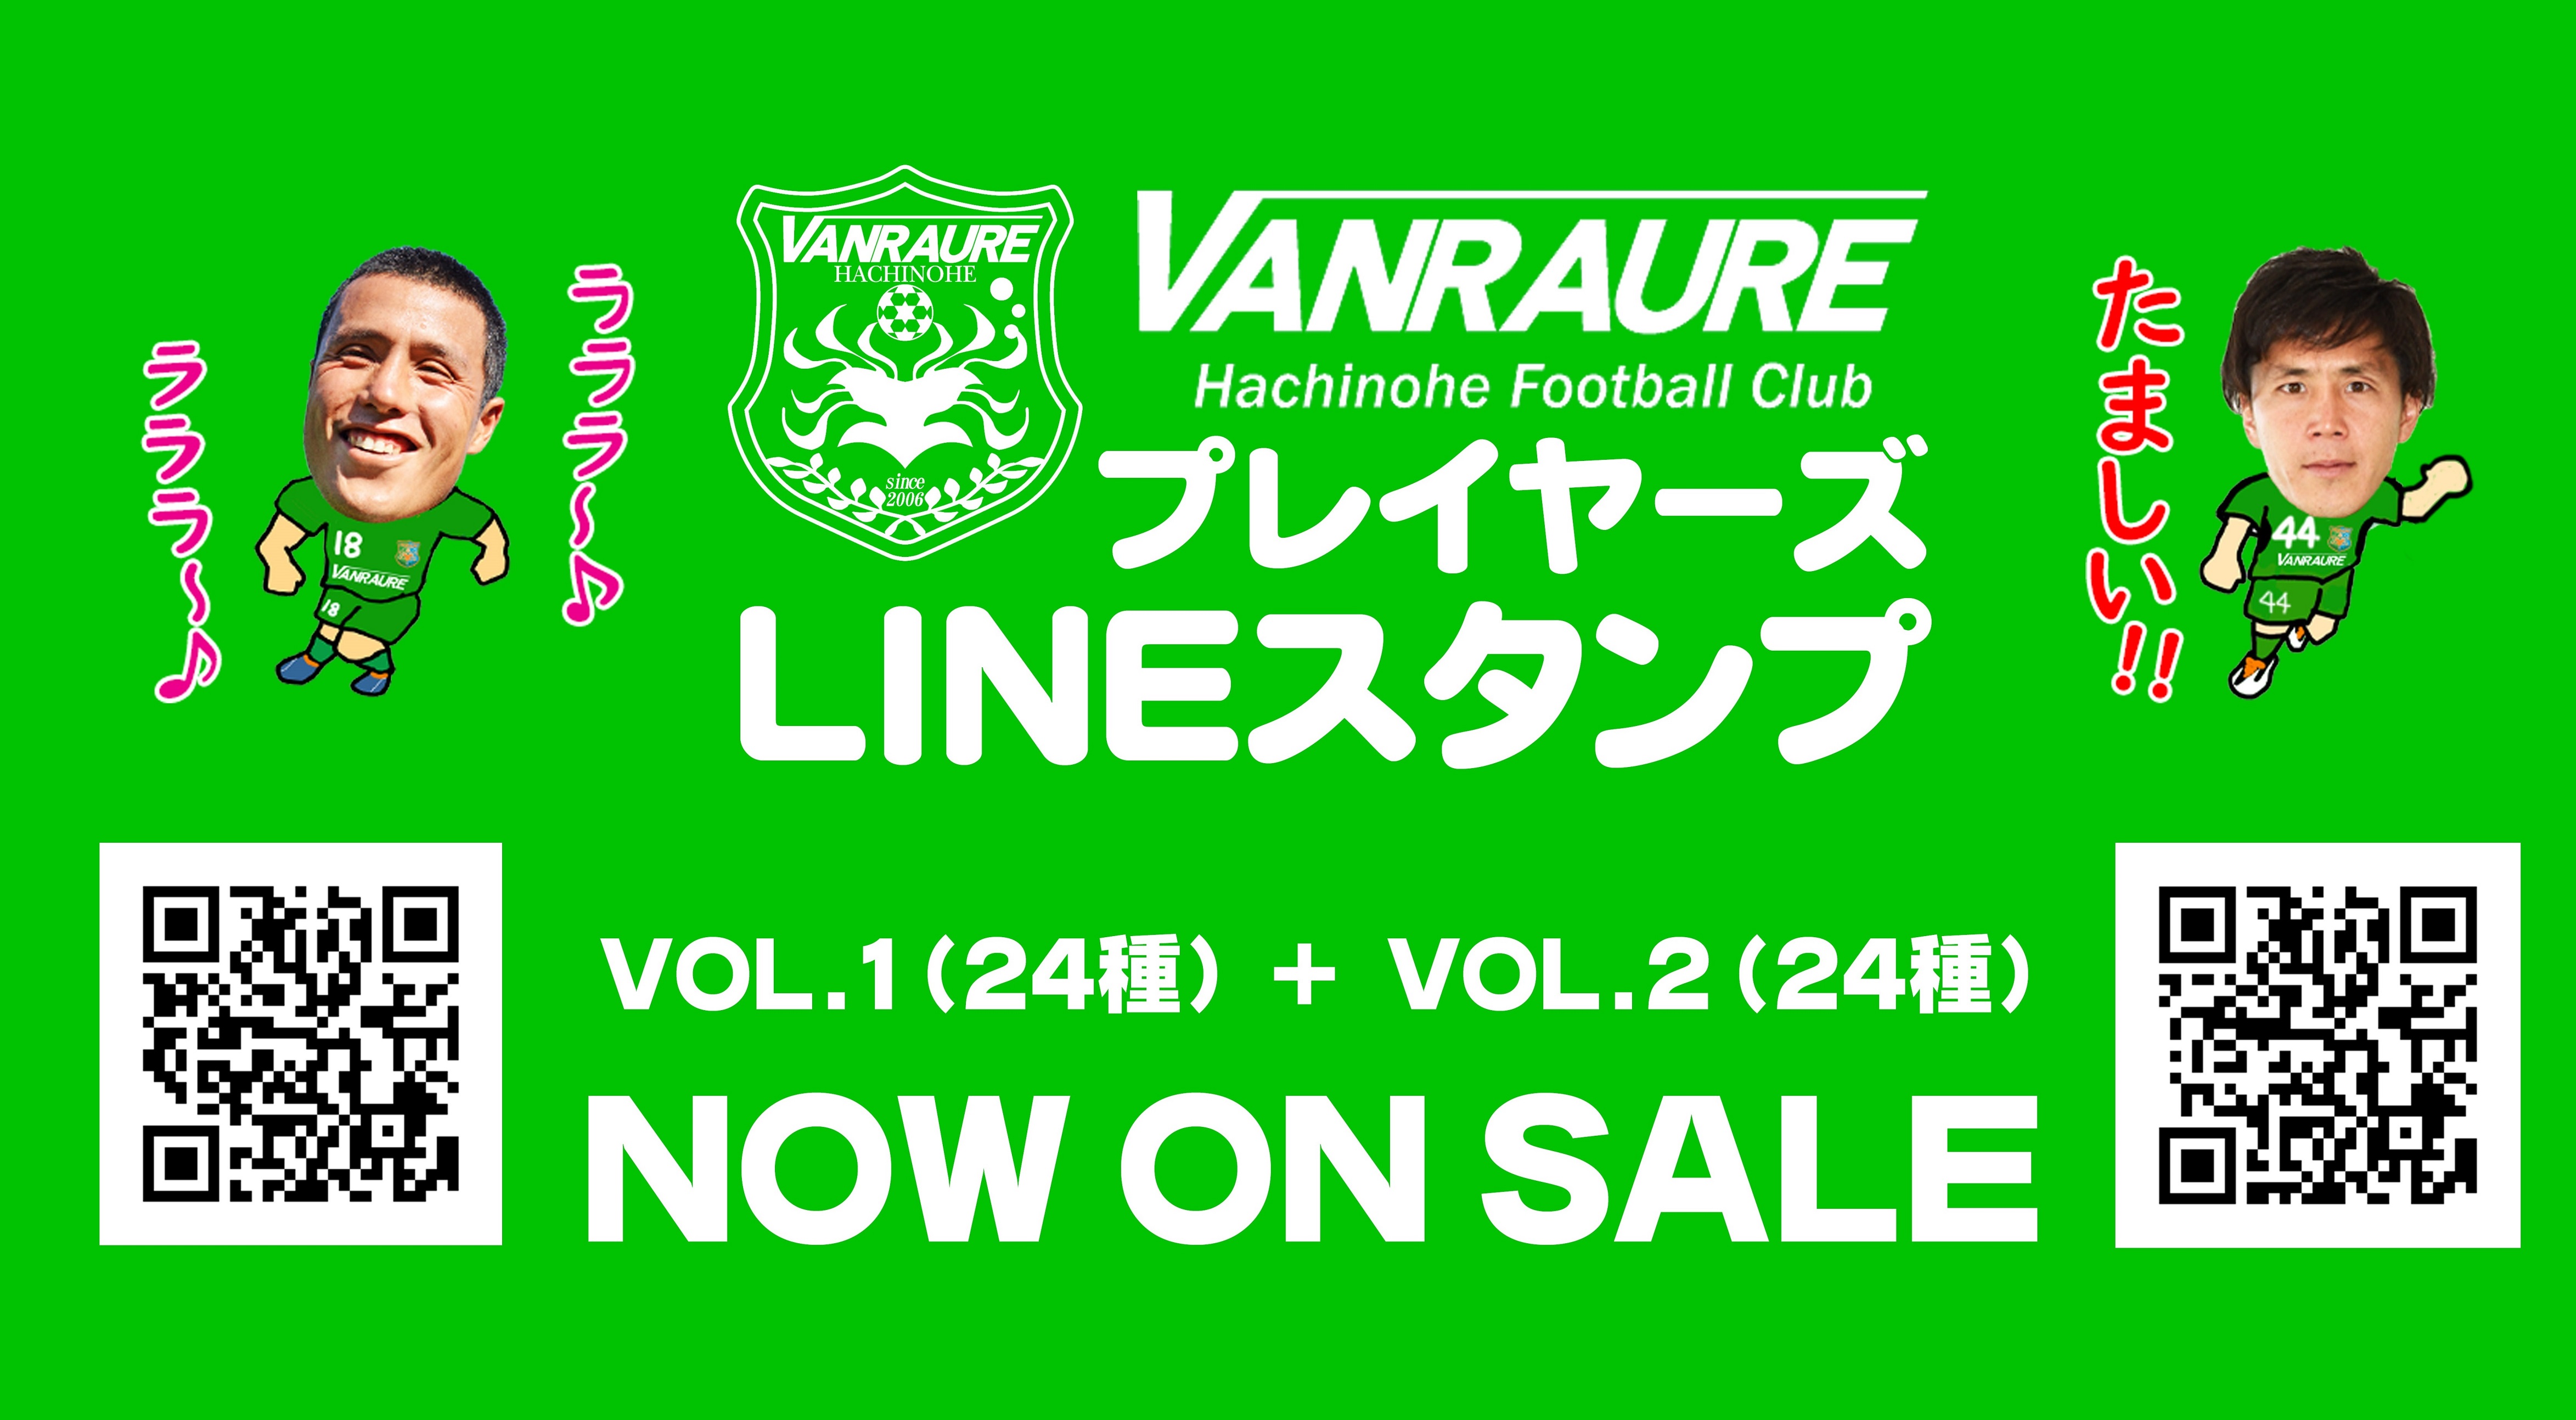 Lineスタンプ プレイヤーズlineスタンプ販売中 ヴァンラーレ八戸fcオフィシャルサイト